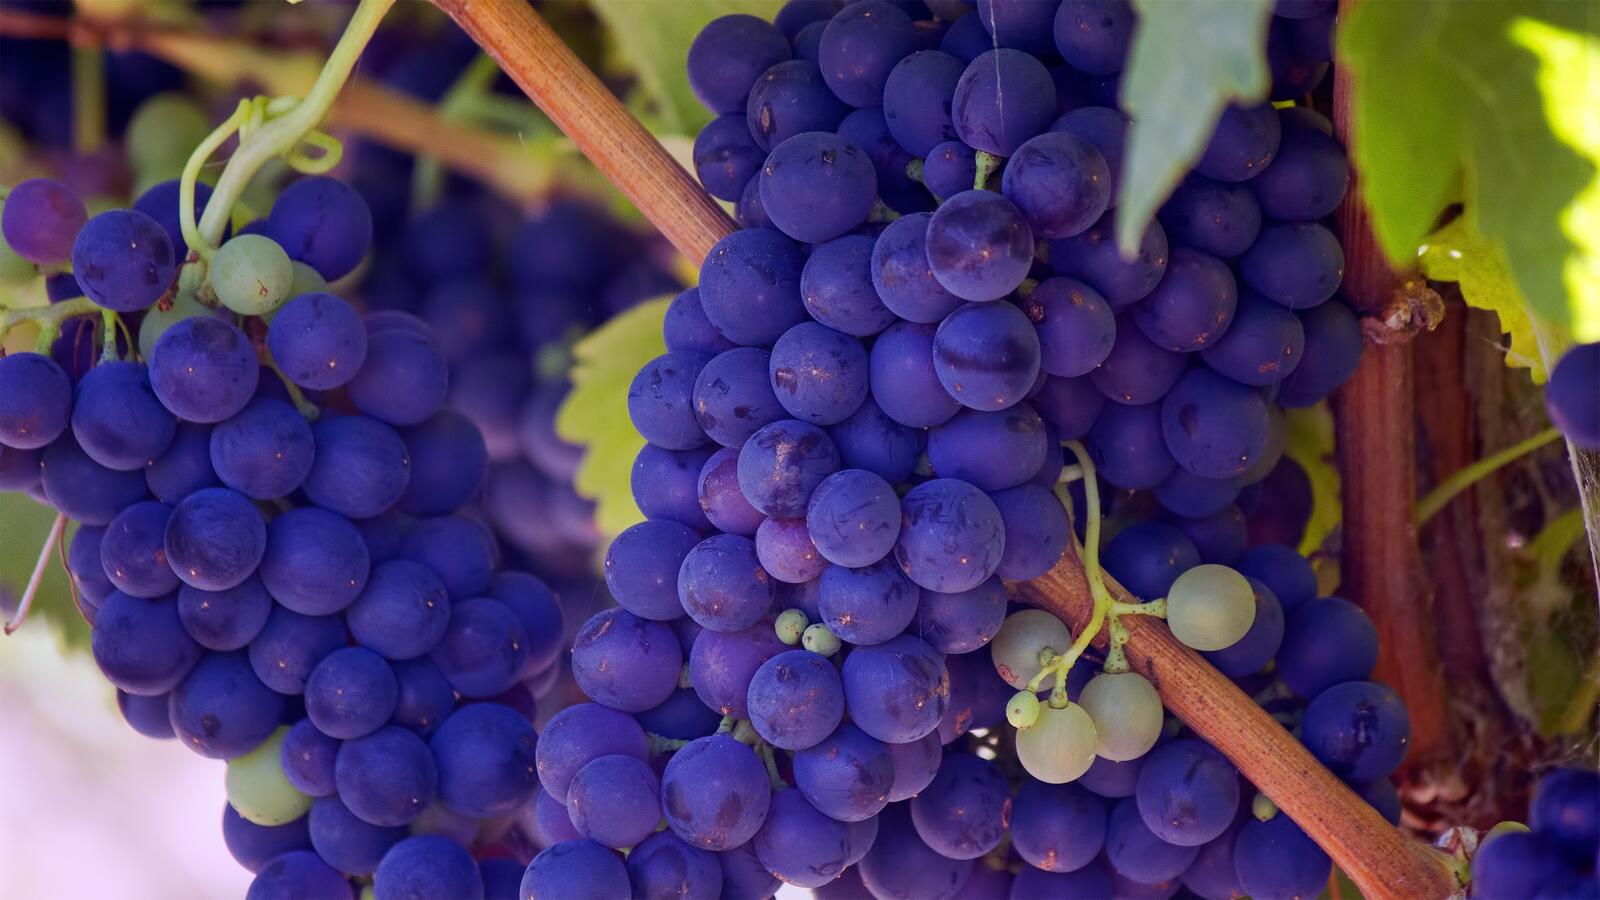 Бесплатное фото Спелый виноград фиолетового цвета